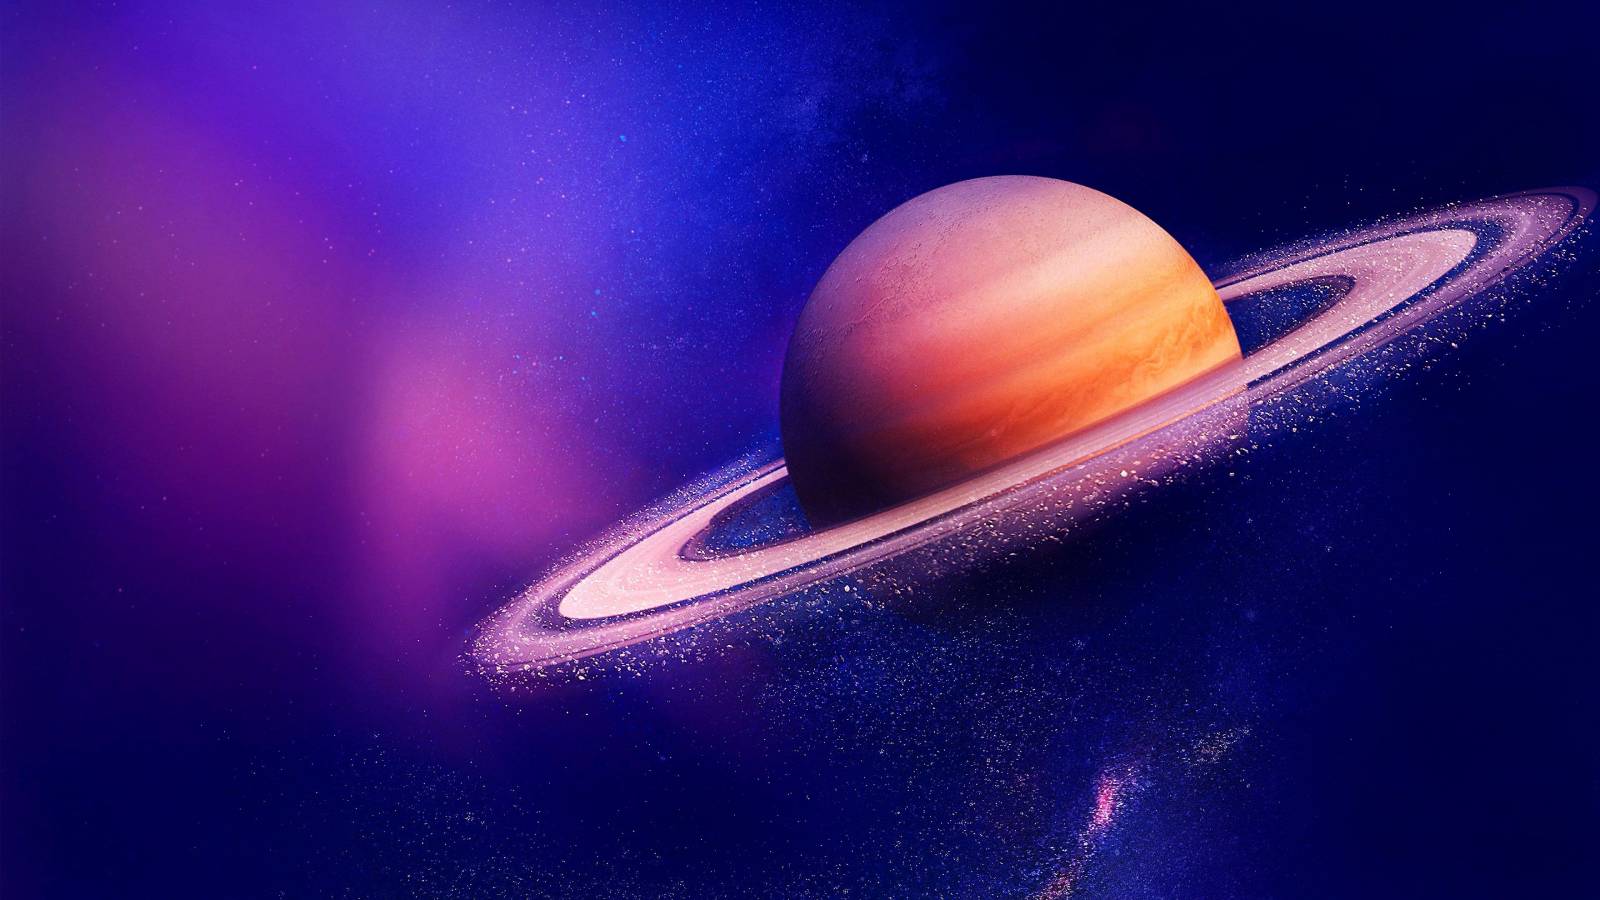 Planeetan Saturnuksen ydin